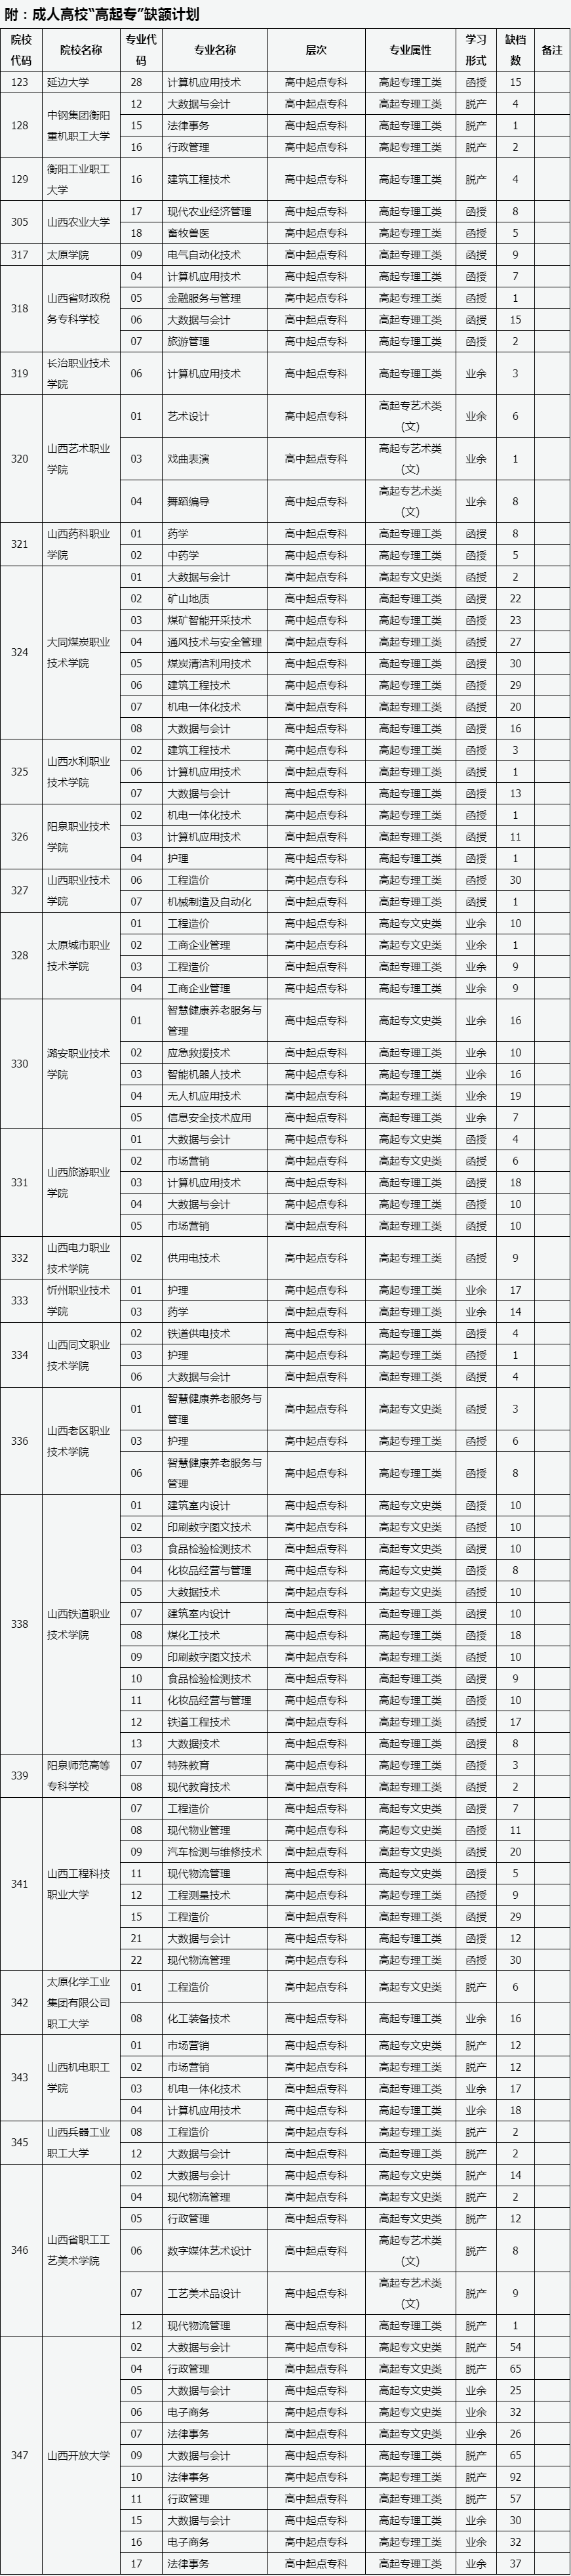 山西省2023年成人高校招生征集志愿公告第9号.png